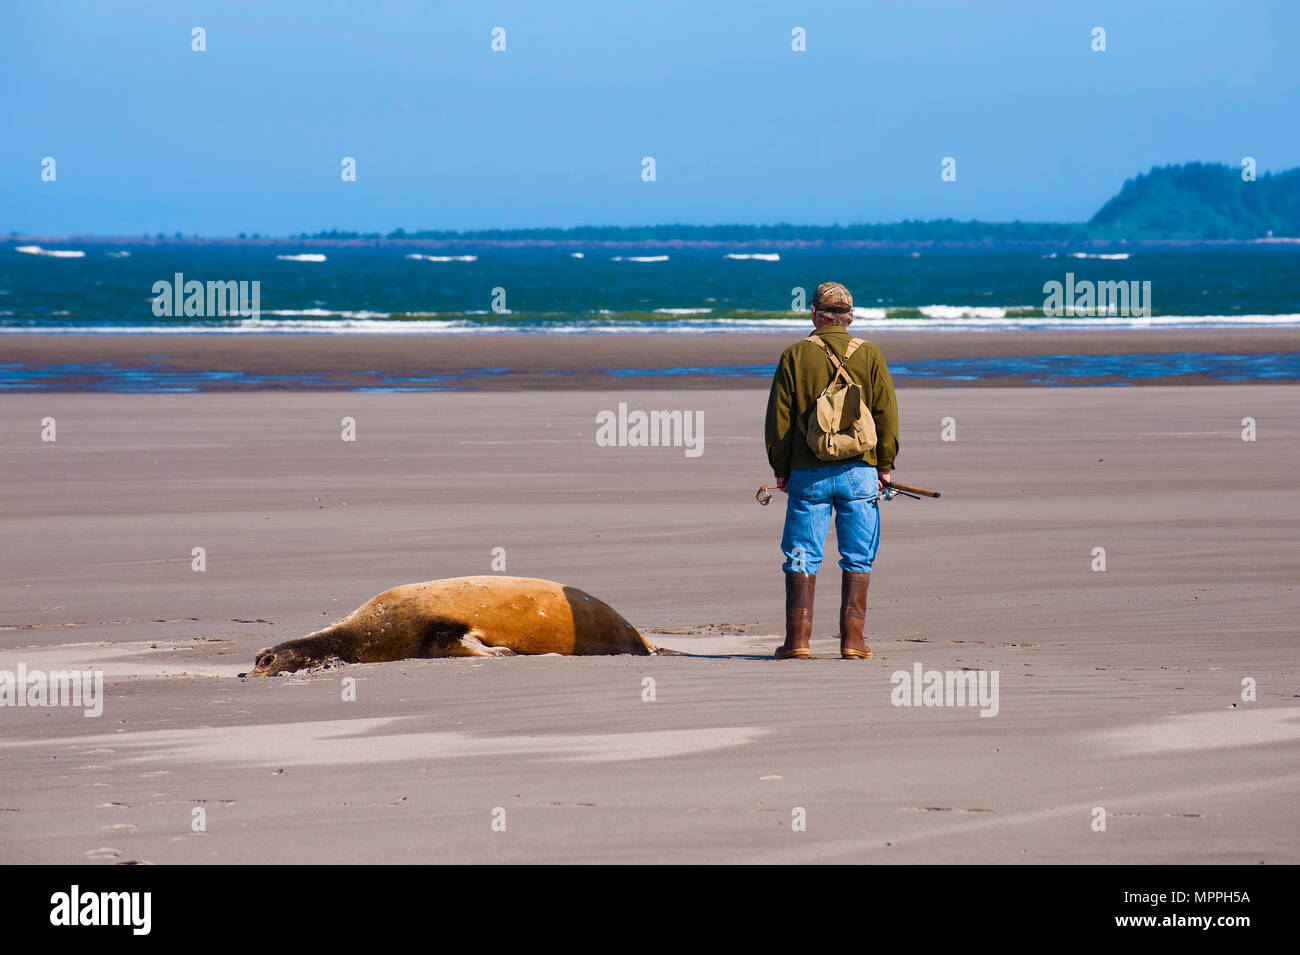 Warrenton, Oregon, Stati Uniti d'America - 30 Maggio 2014: un pescatore sta guardando fuori verso l'acqua, sulle rive del fiume Columbia dove incontra il Pacifico Foto Stock